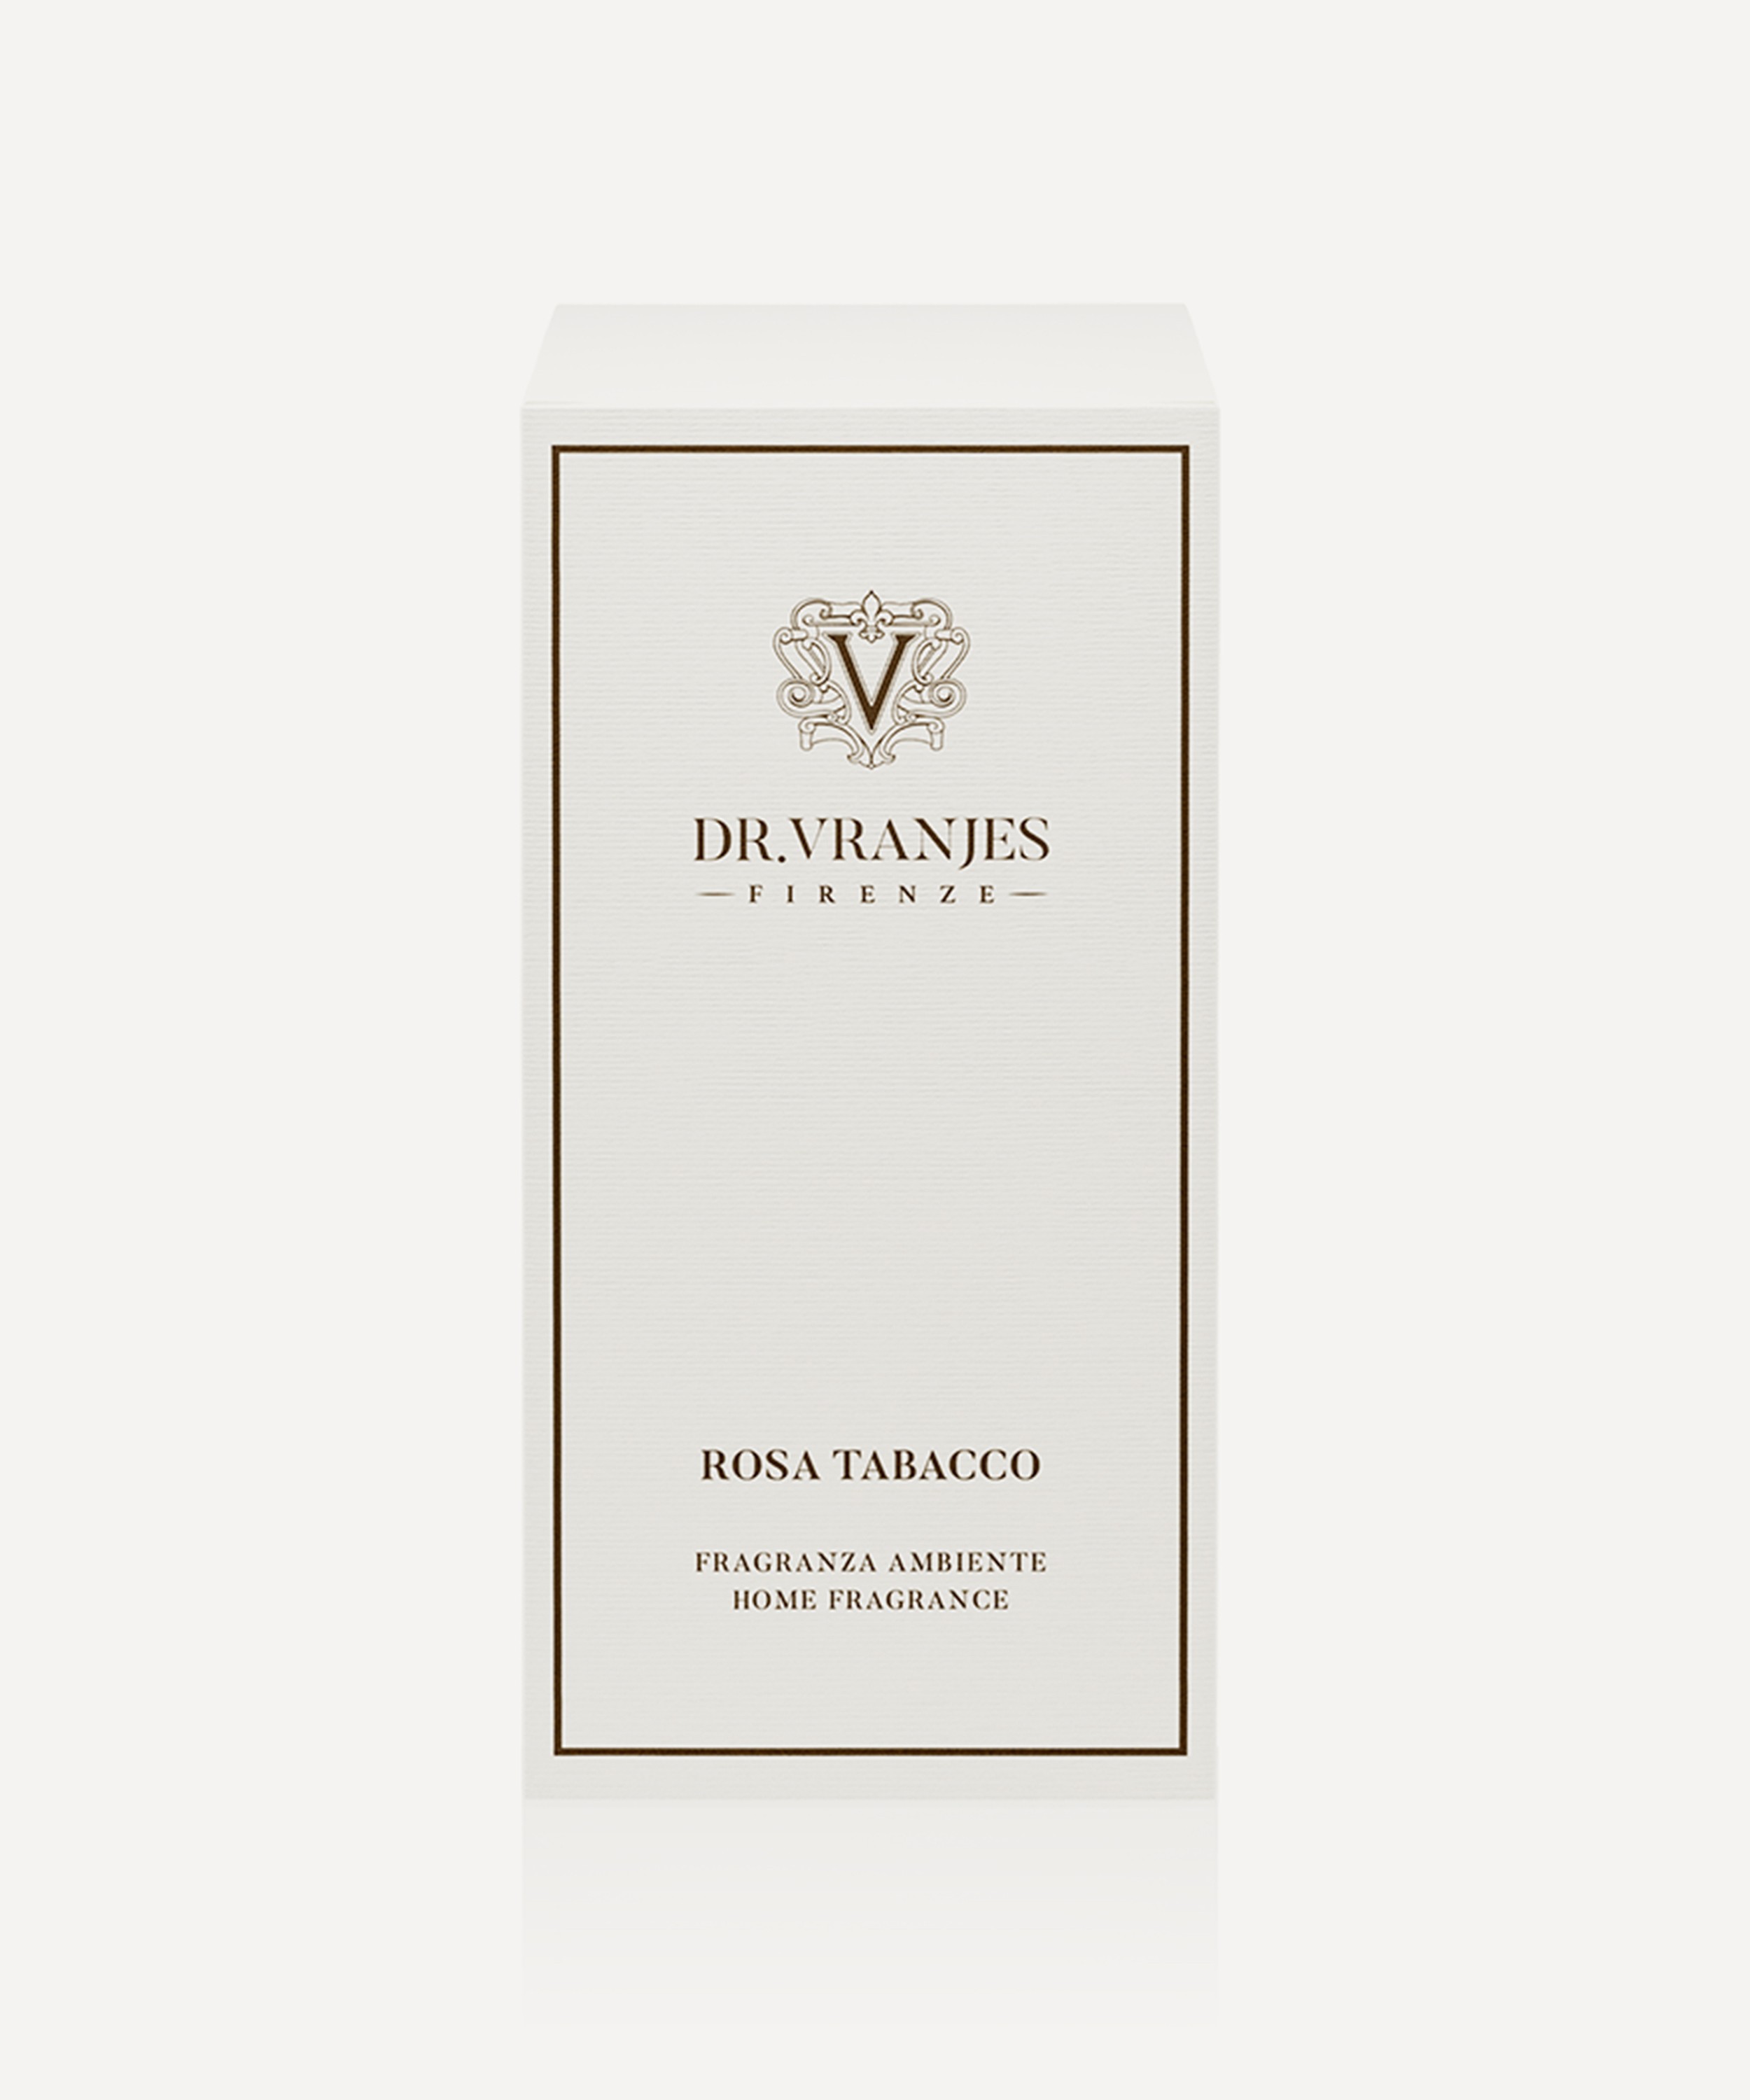 Dr Vranjes Firenze - Rosa Tabacco Fragrance Diffuser 2500ml image number 2